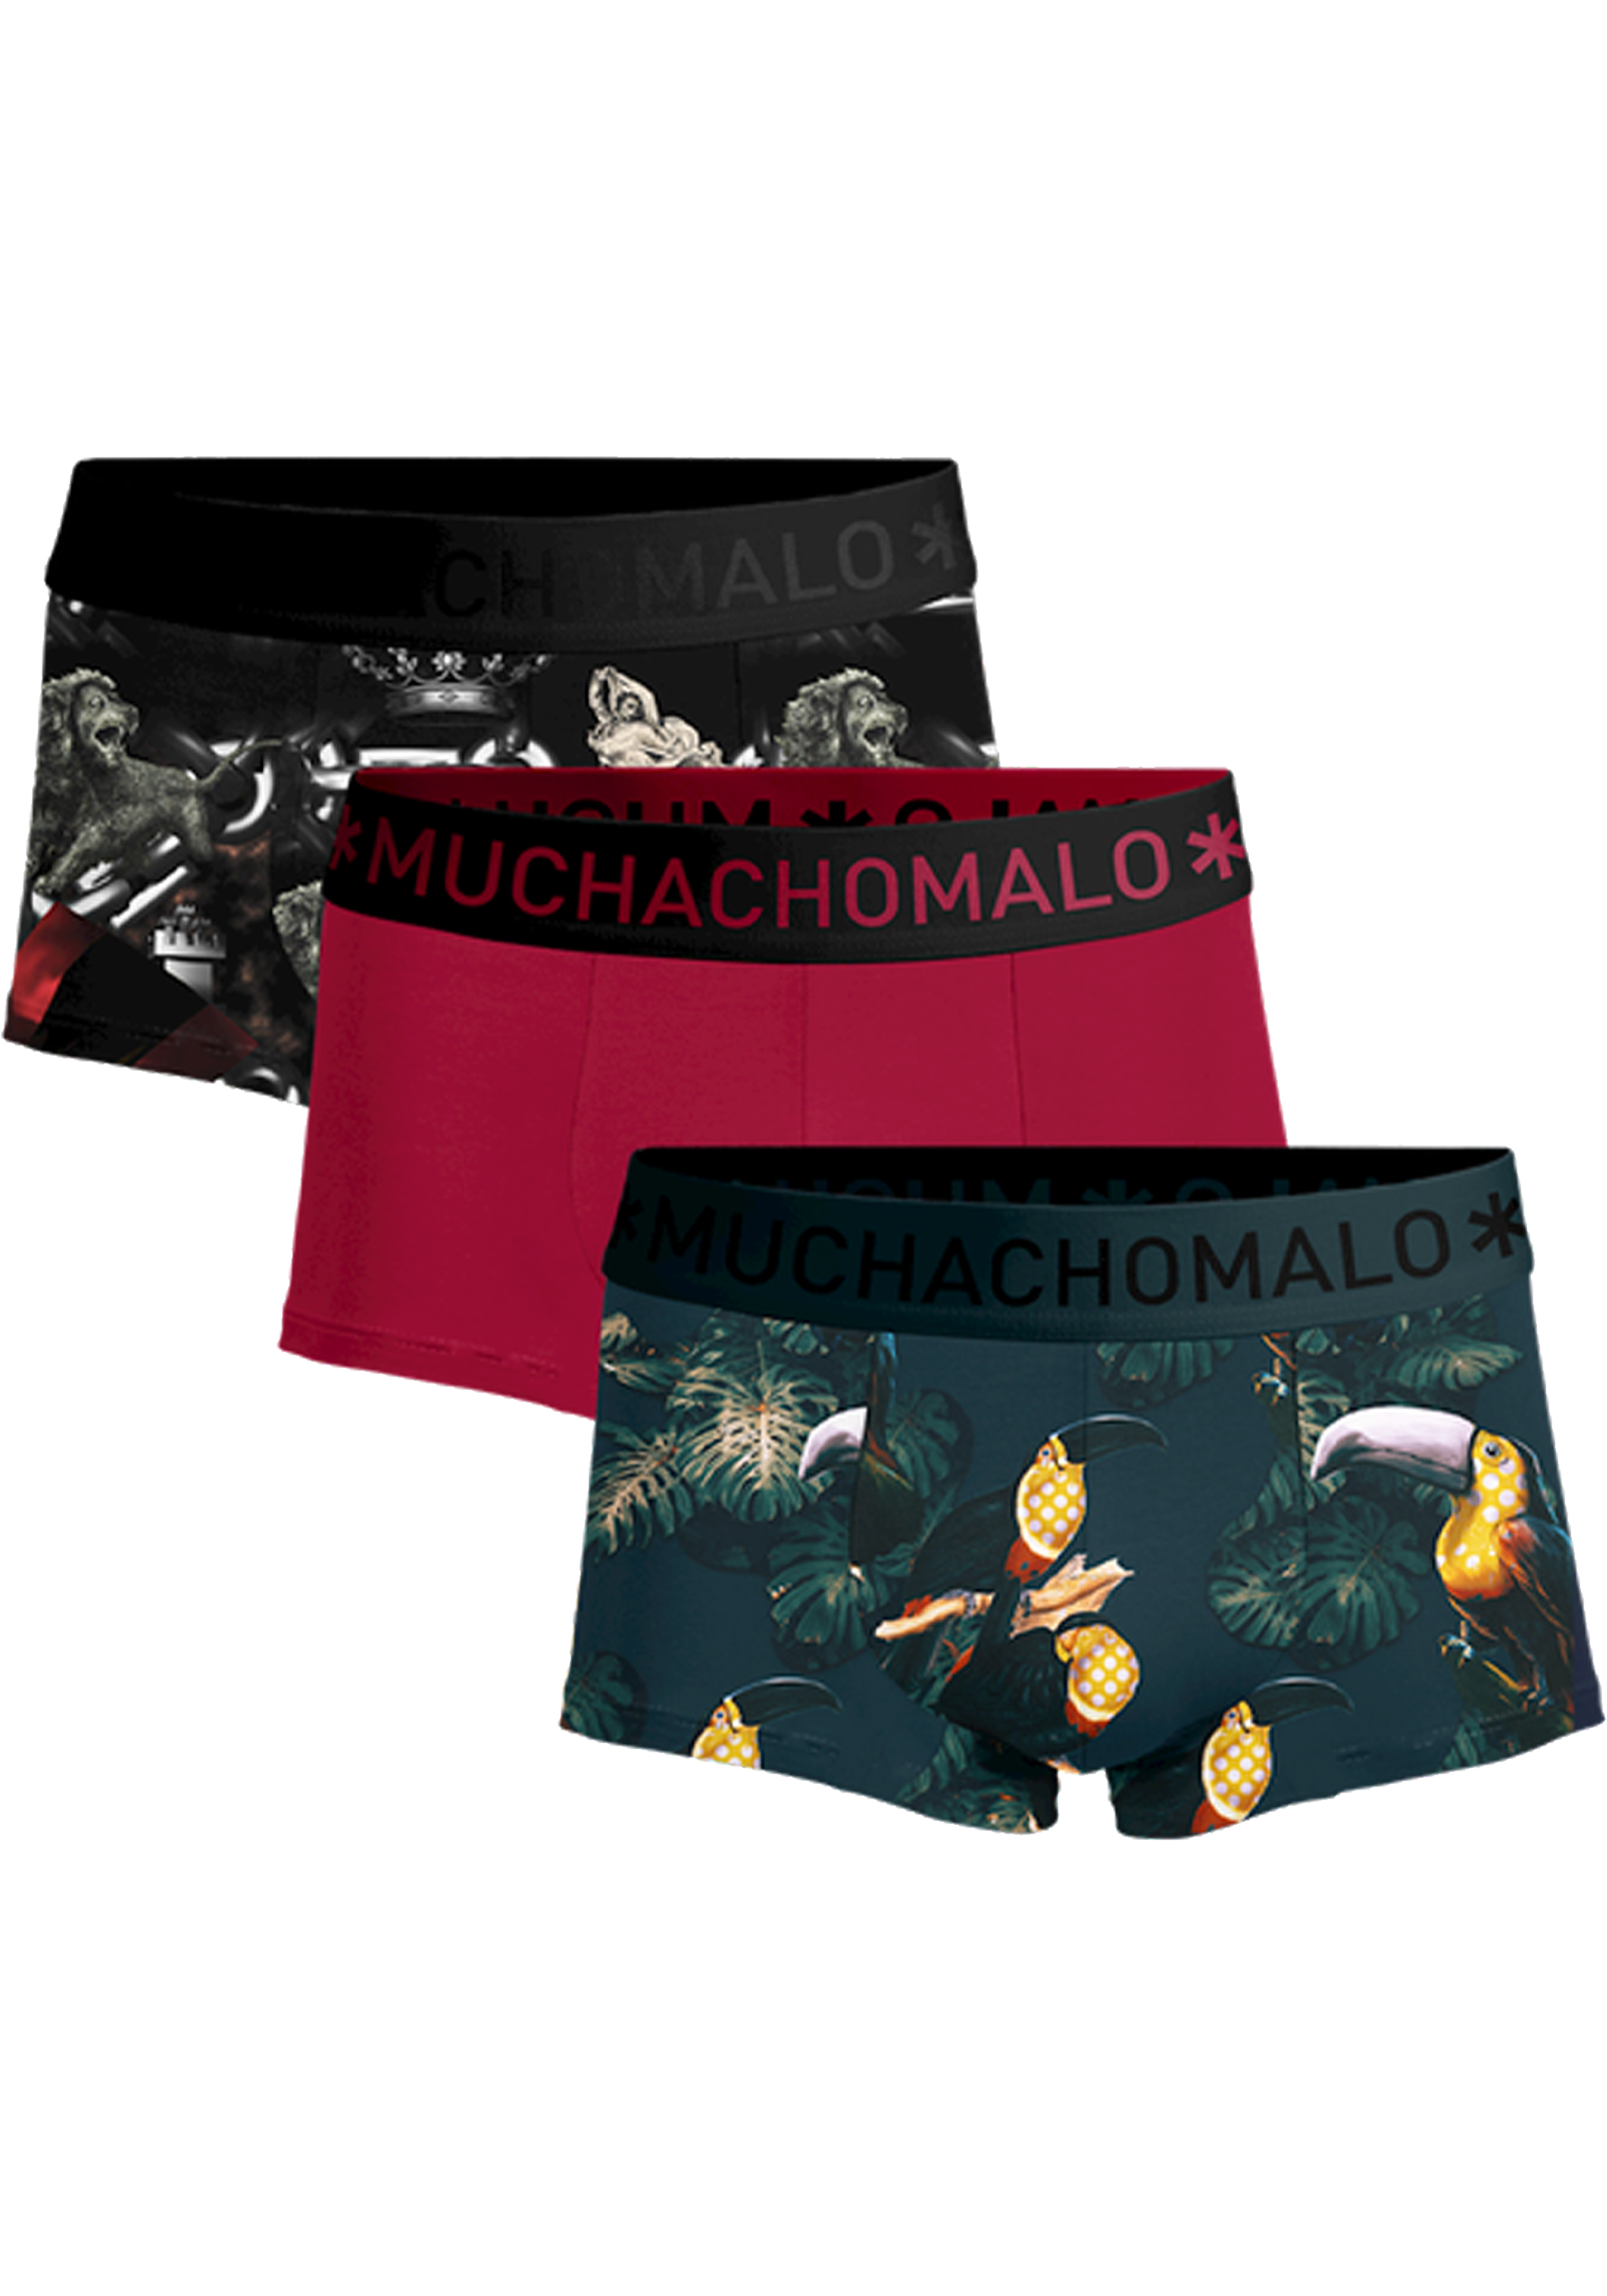 Muchachomalo boxershorts, heren boxers kort (3-pack), Costa Rica Spain